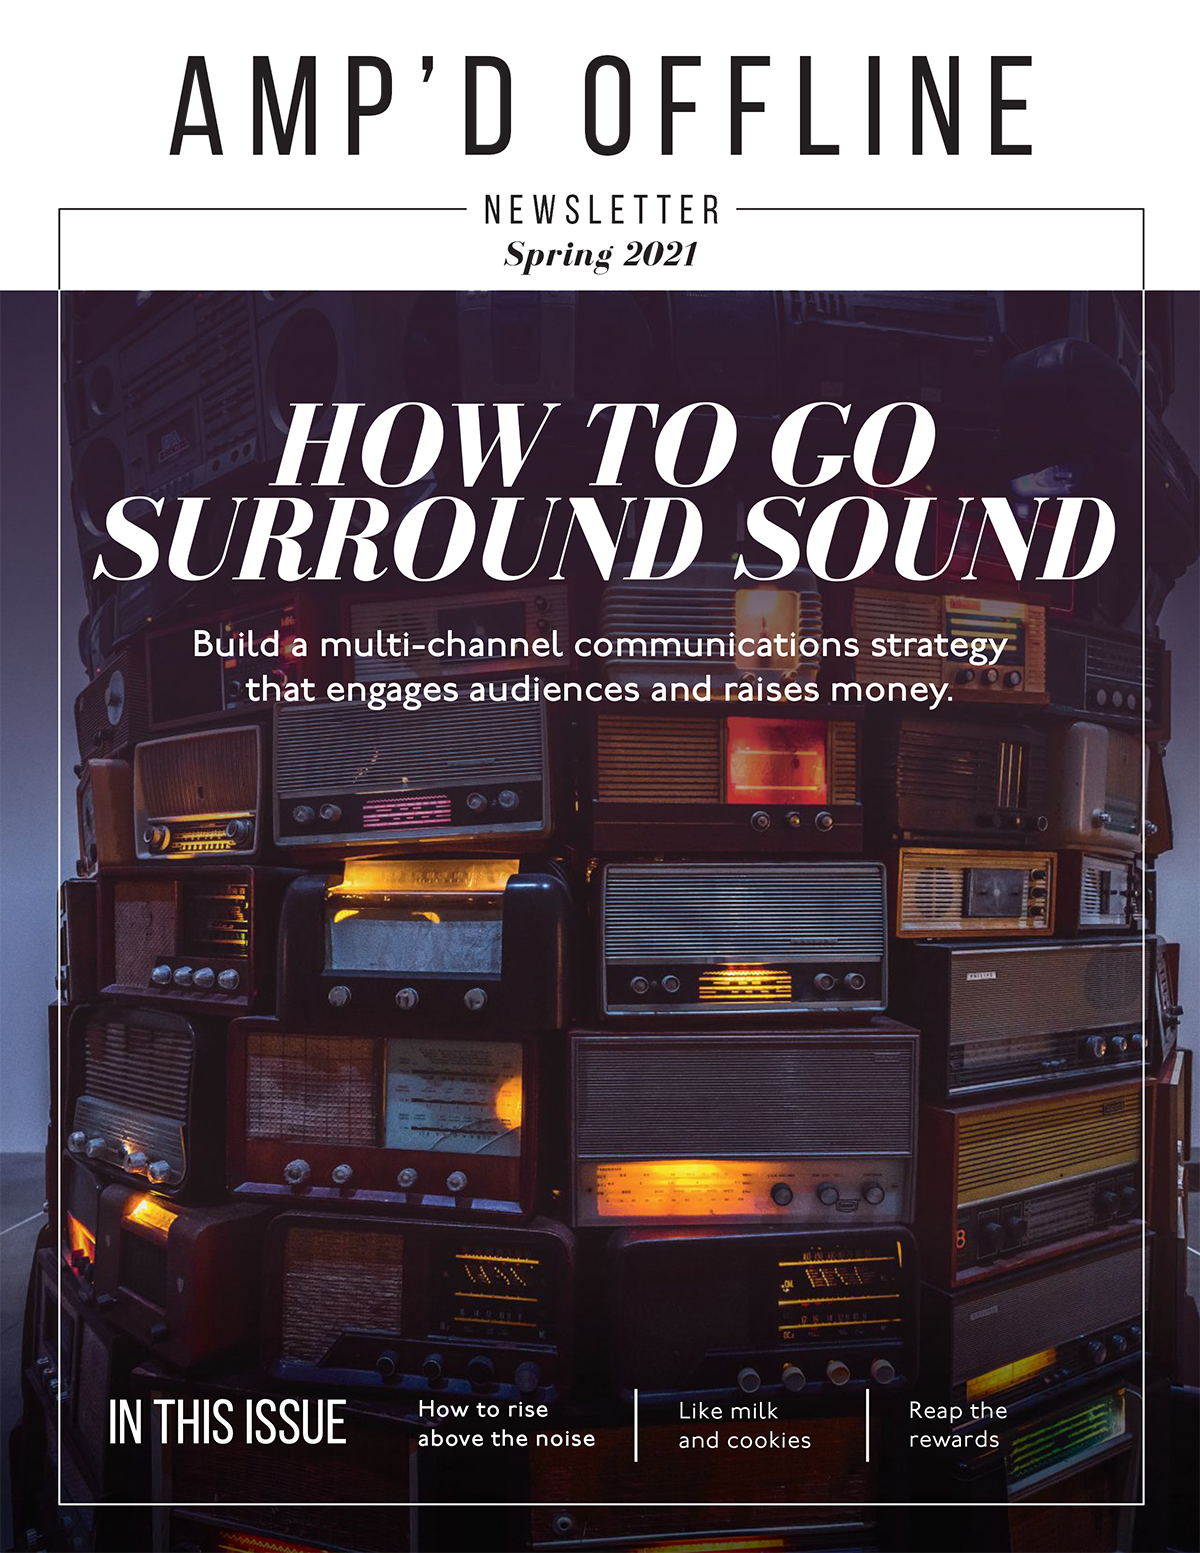 AMP'D OFFLINE: How To Go Surround Sound